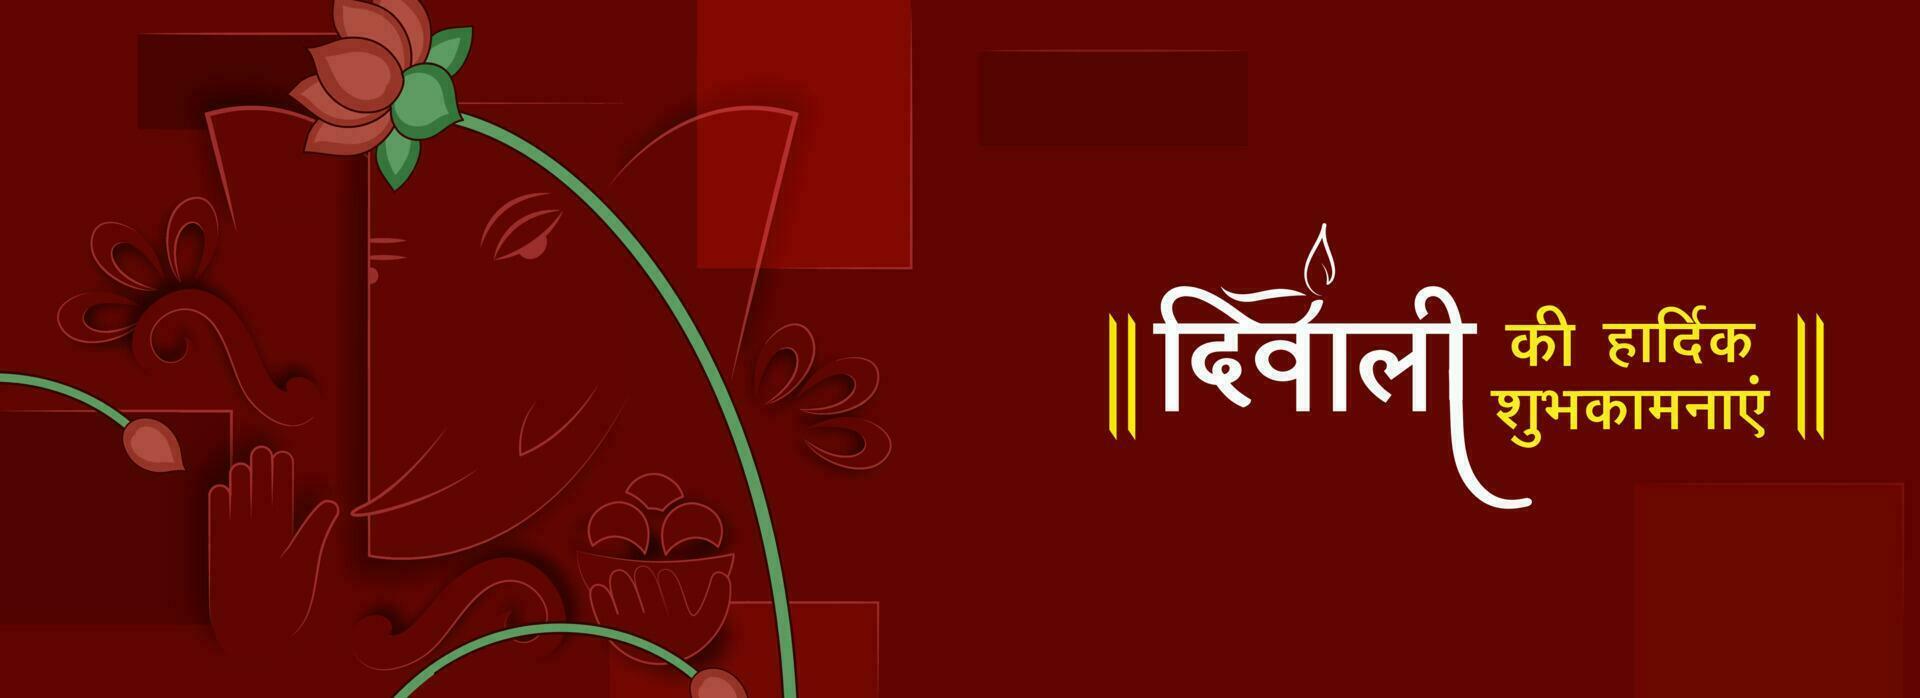 Indisch licht festival, gelukkig diwali viering concept met Hindi tekst gelukkig diwali met Hindoe mythologisch heer ganesha met lotus bloemen en ruimte voor uw bericht. vector